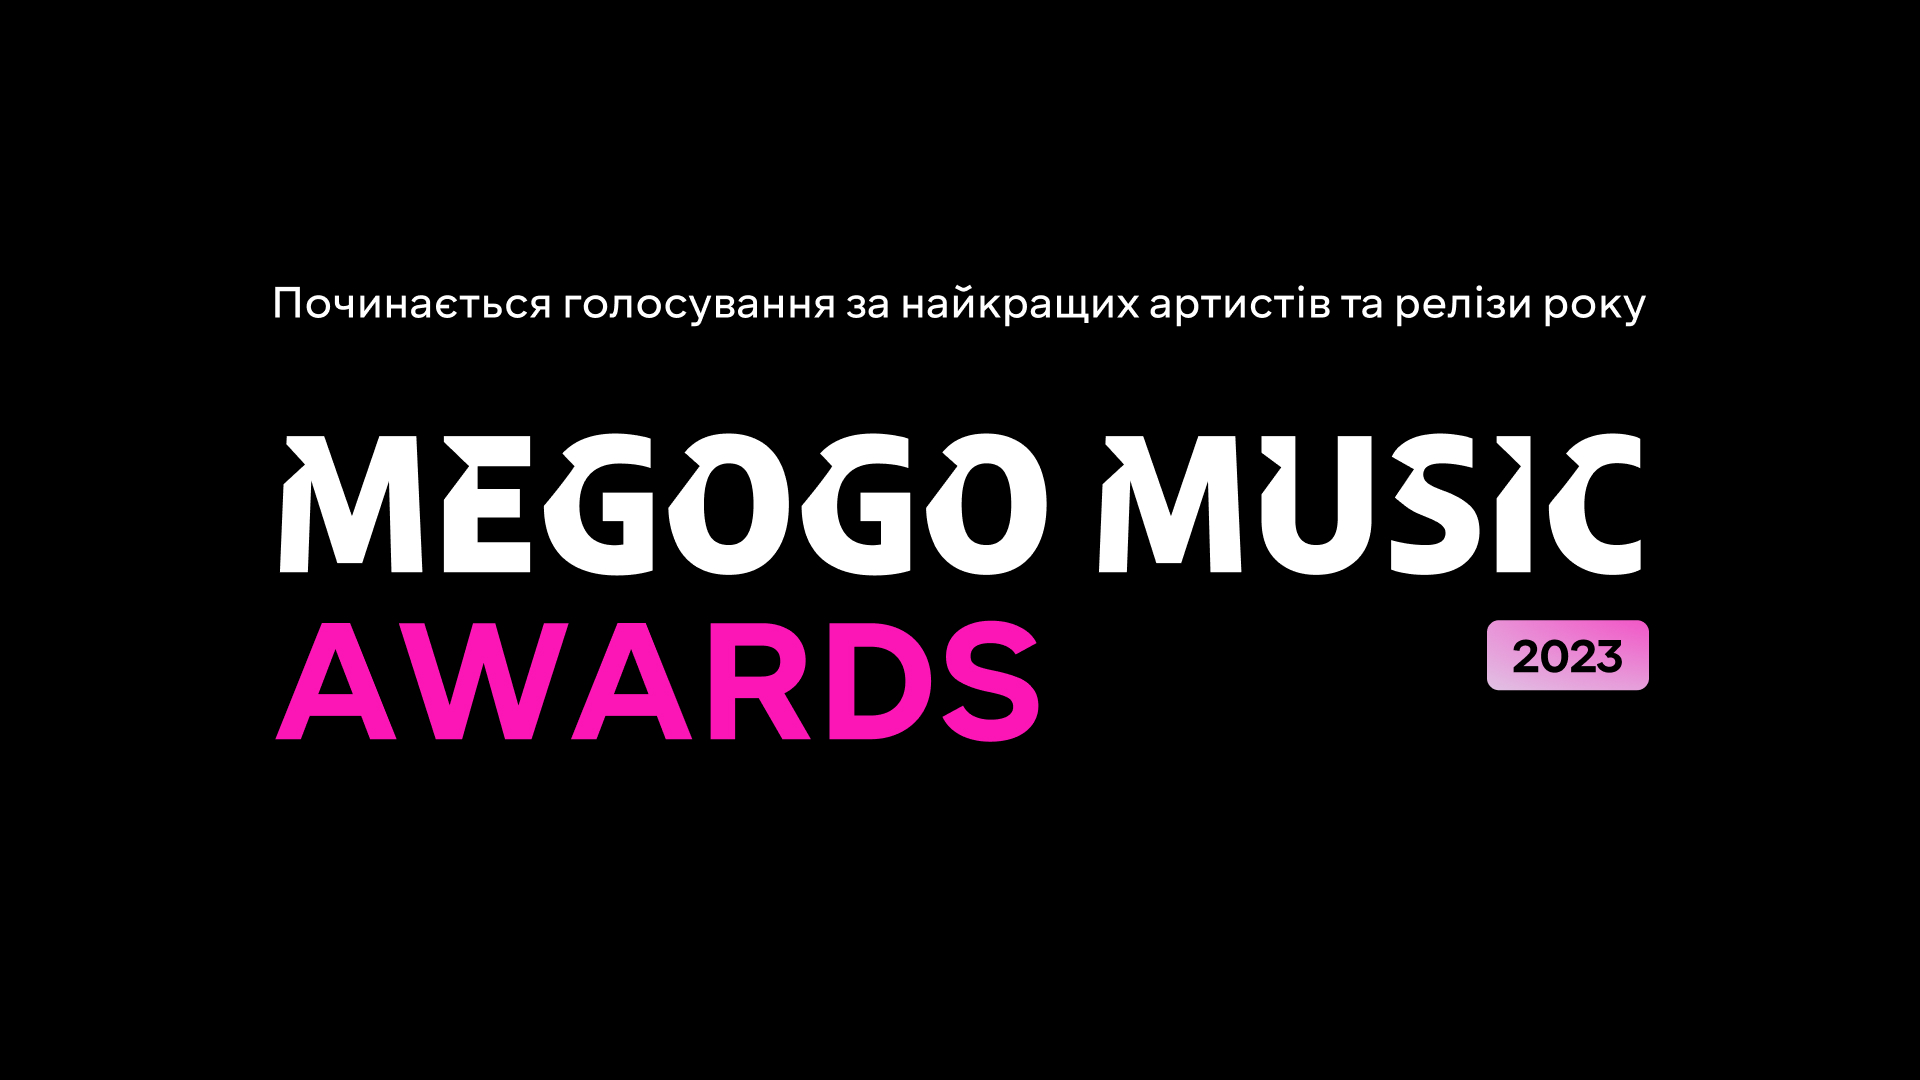 🏆 Відкрито голосування MEGOGO MUSIC AWARDS 2023 за найкращих артистів року